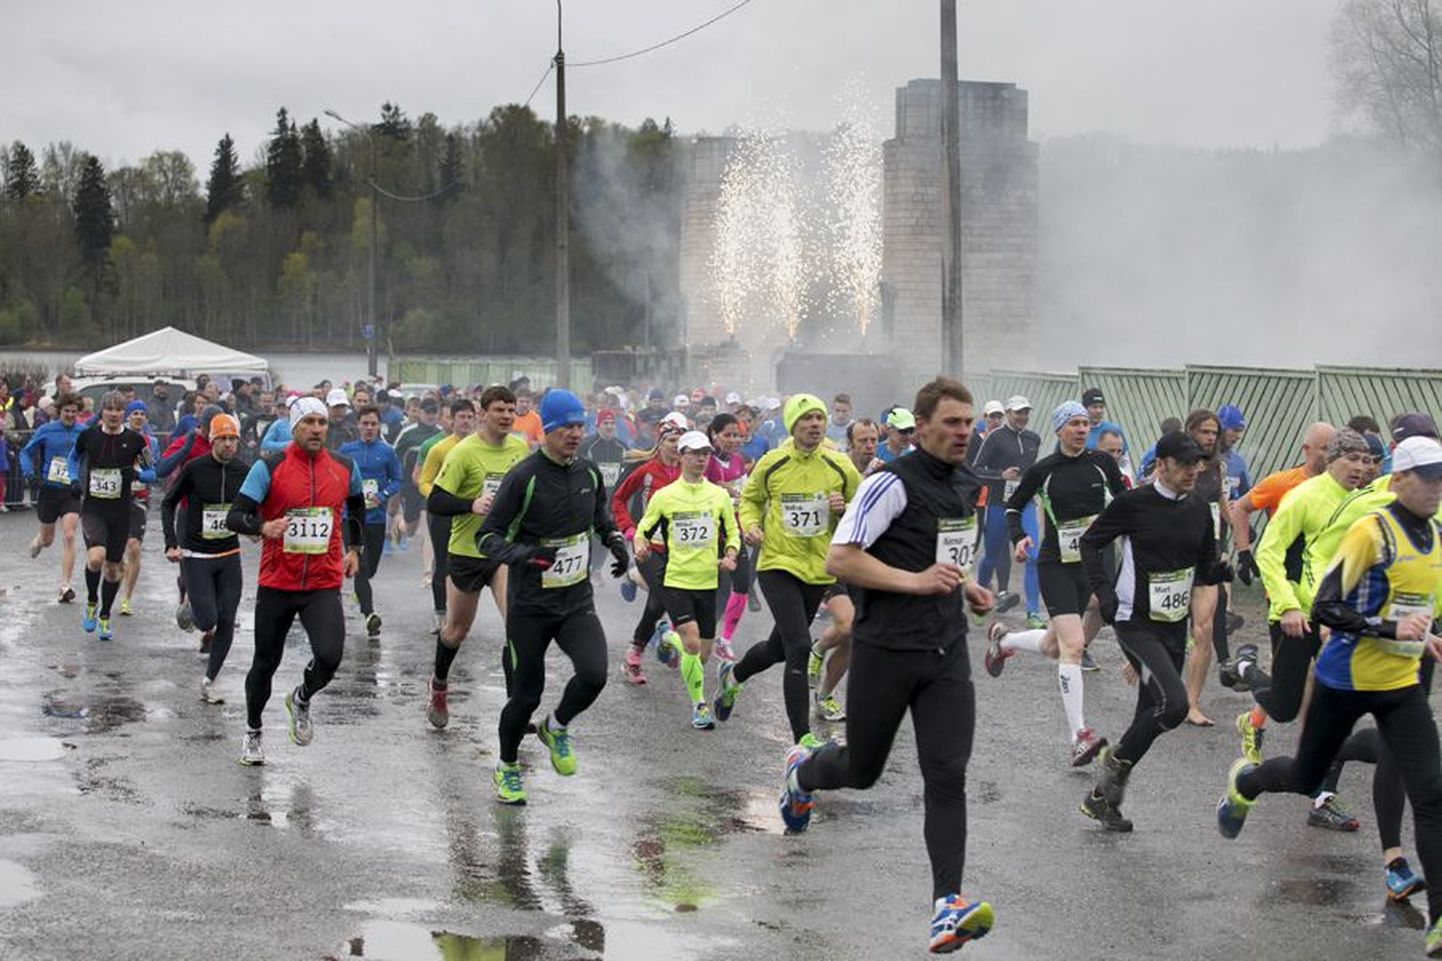 Ümber Viljandi järve jooks leiab tänavu aset juba 86. korda. 1. mail peetavale rahvaspordipeole on oodata ligemale 4000 osalejat, nende seas mullust võitjat Roman Fostit ja mullust kiireimat naist Jekaterina Patjukki.